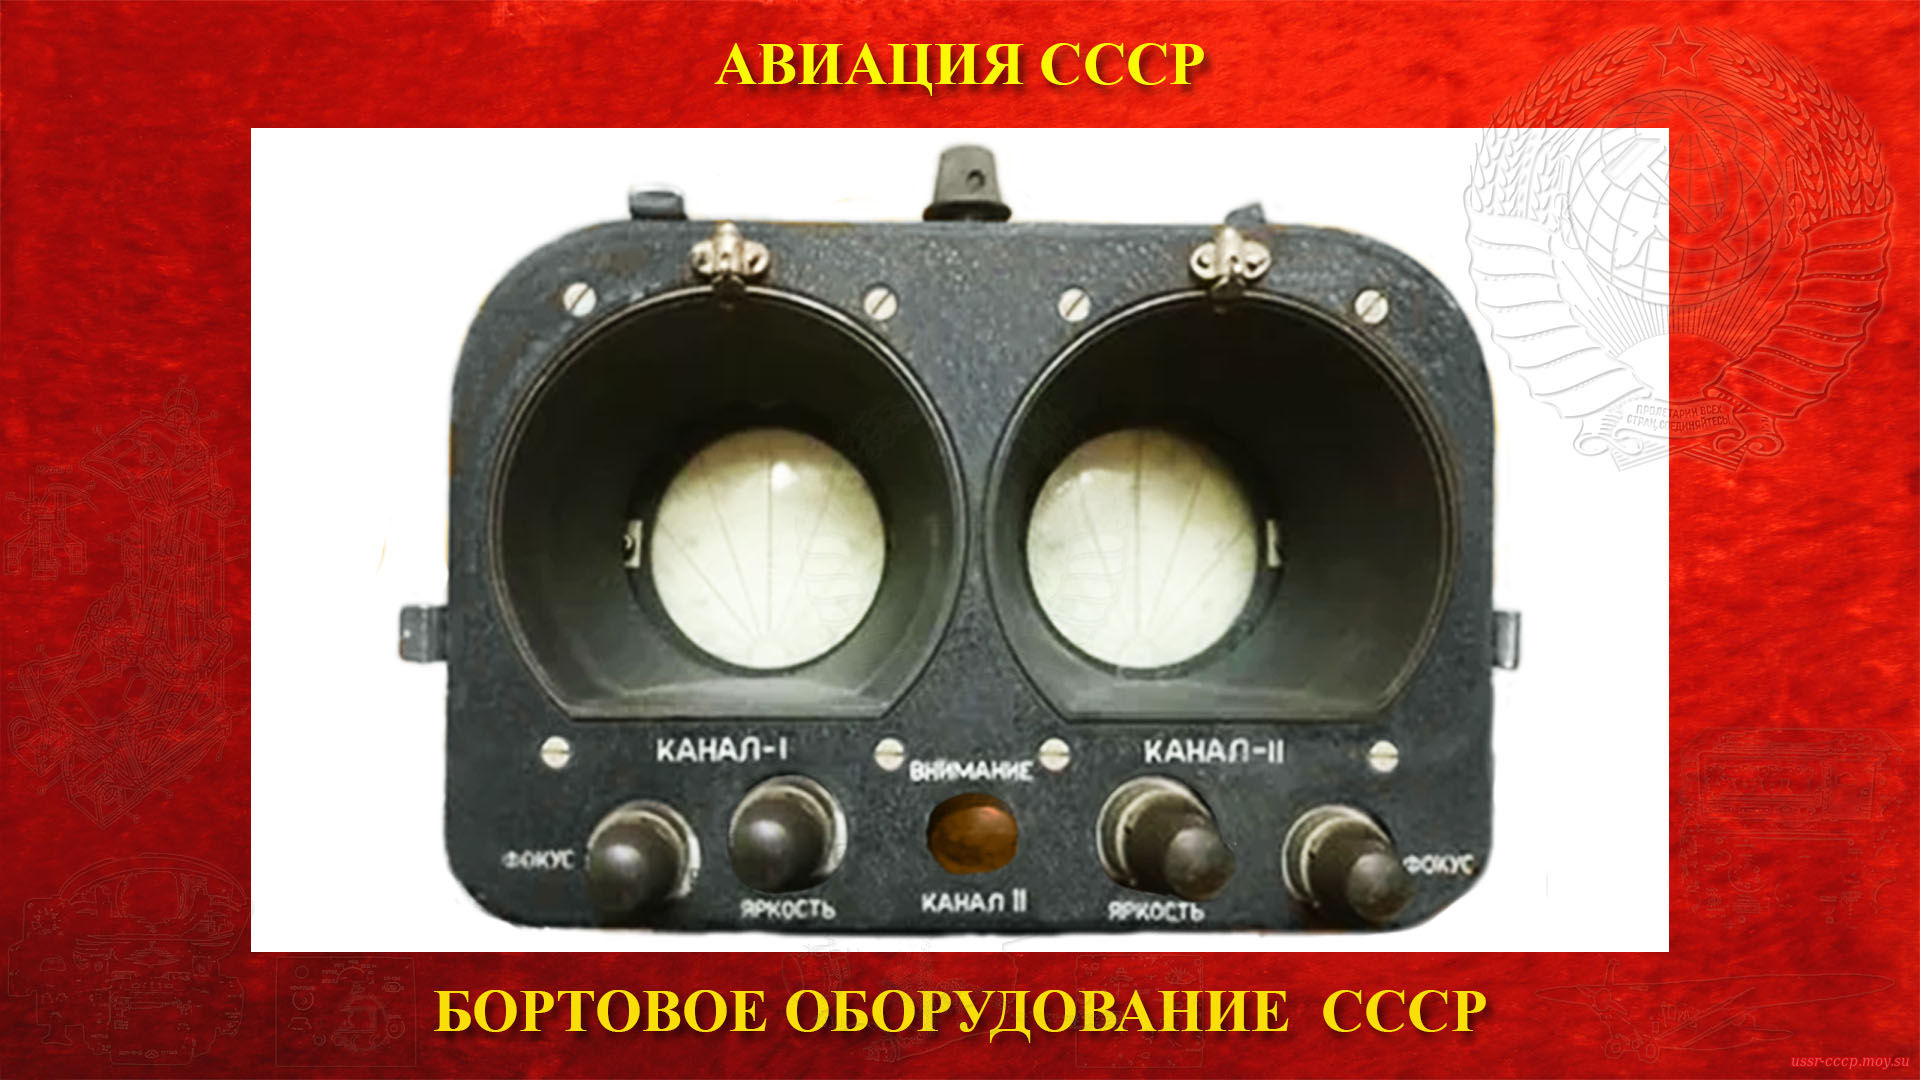 РПСН-2 — Радиолокационная станция предупреждения столкновений и навигации